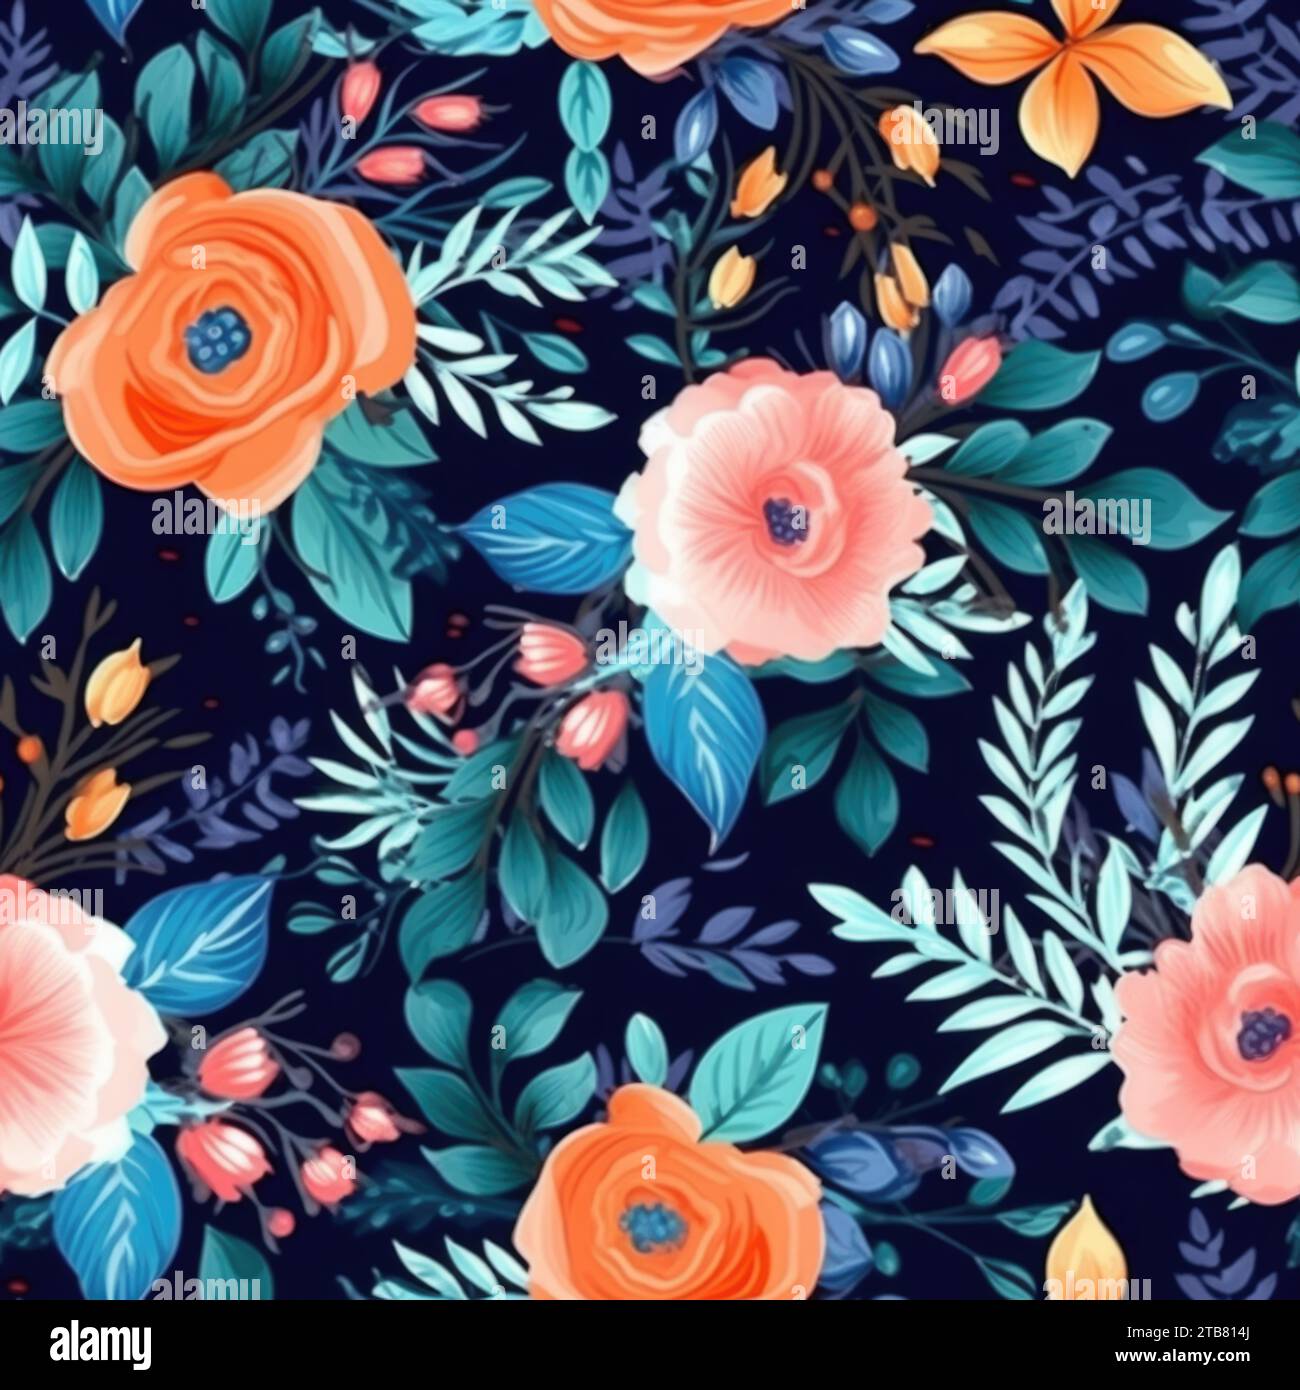 Questa immagine presenta un'incredibile gamma di rose e fogliame blu vivaci disposti in un accattivante motivo floreale Foto Stock